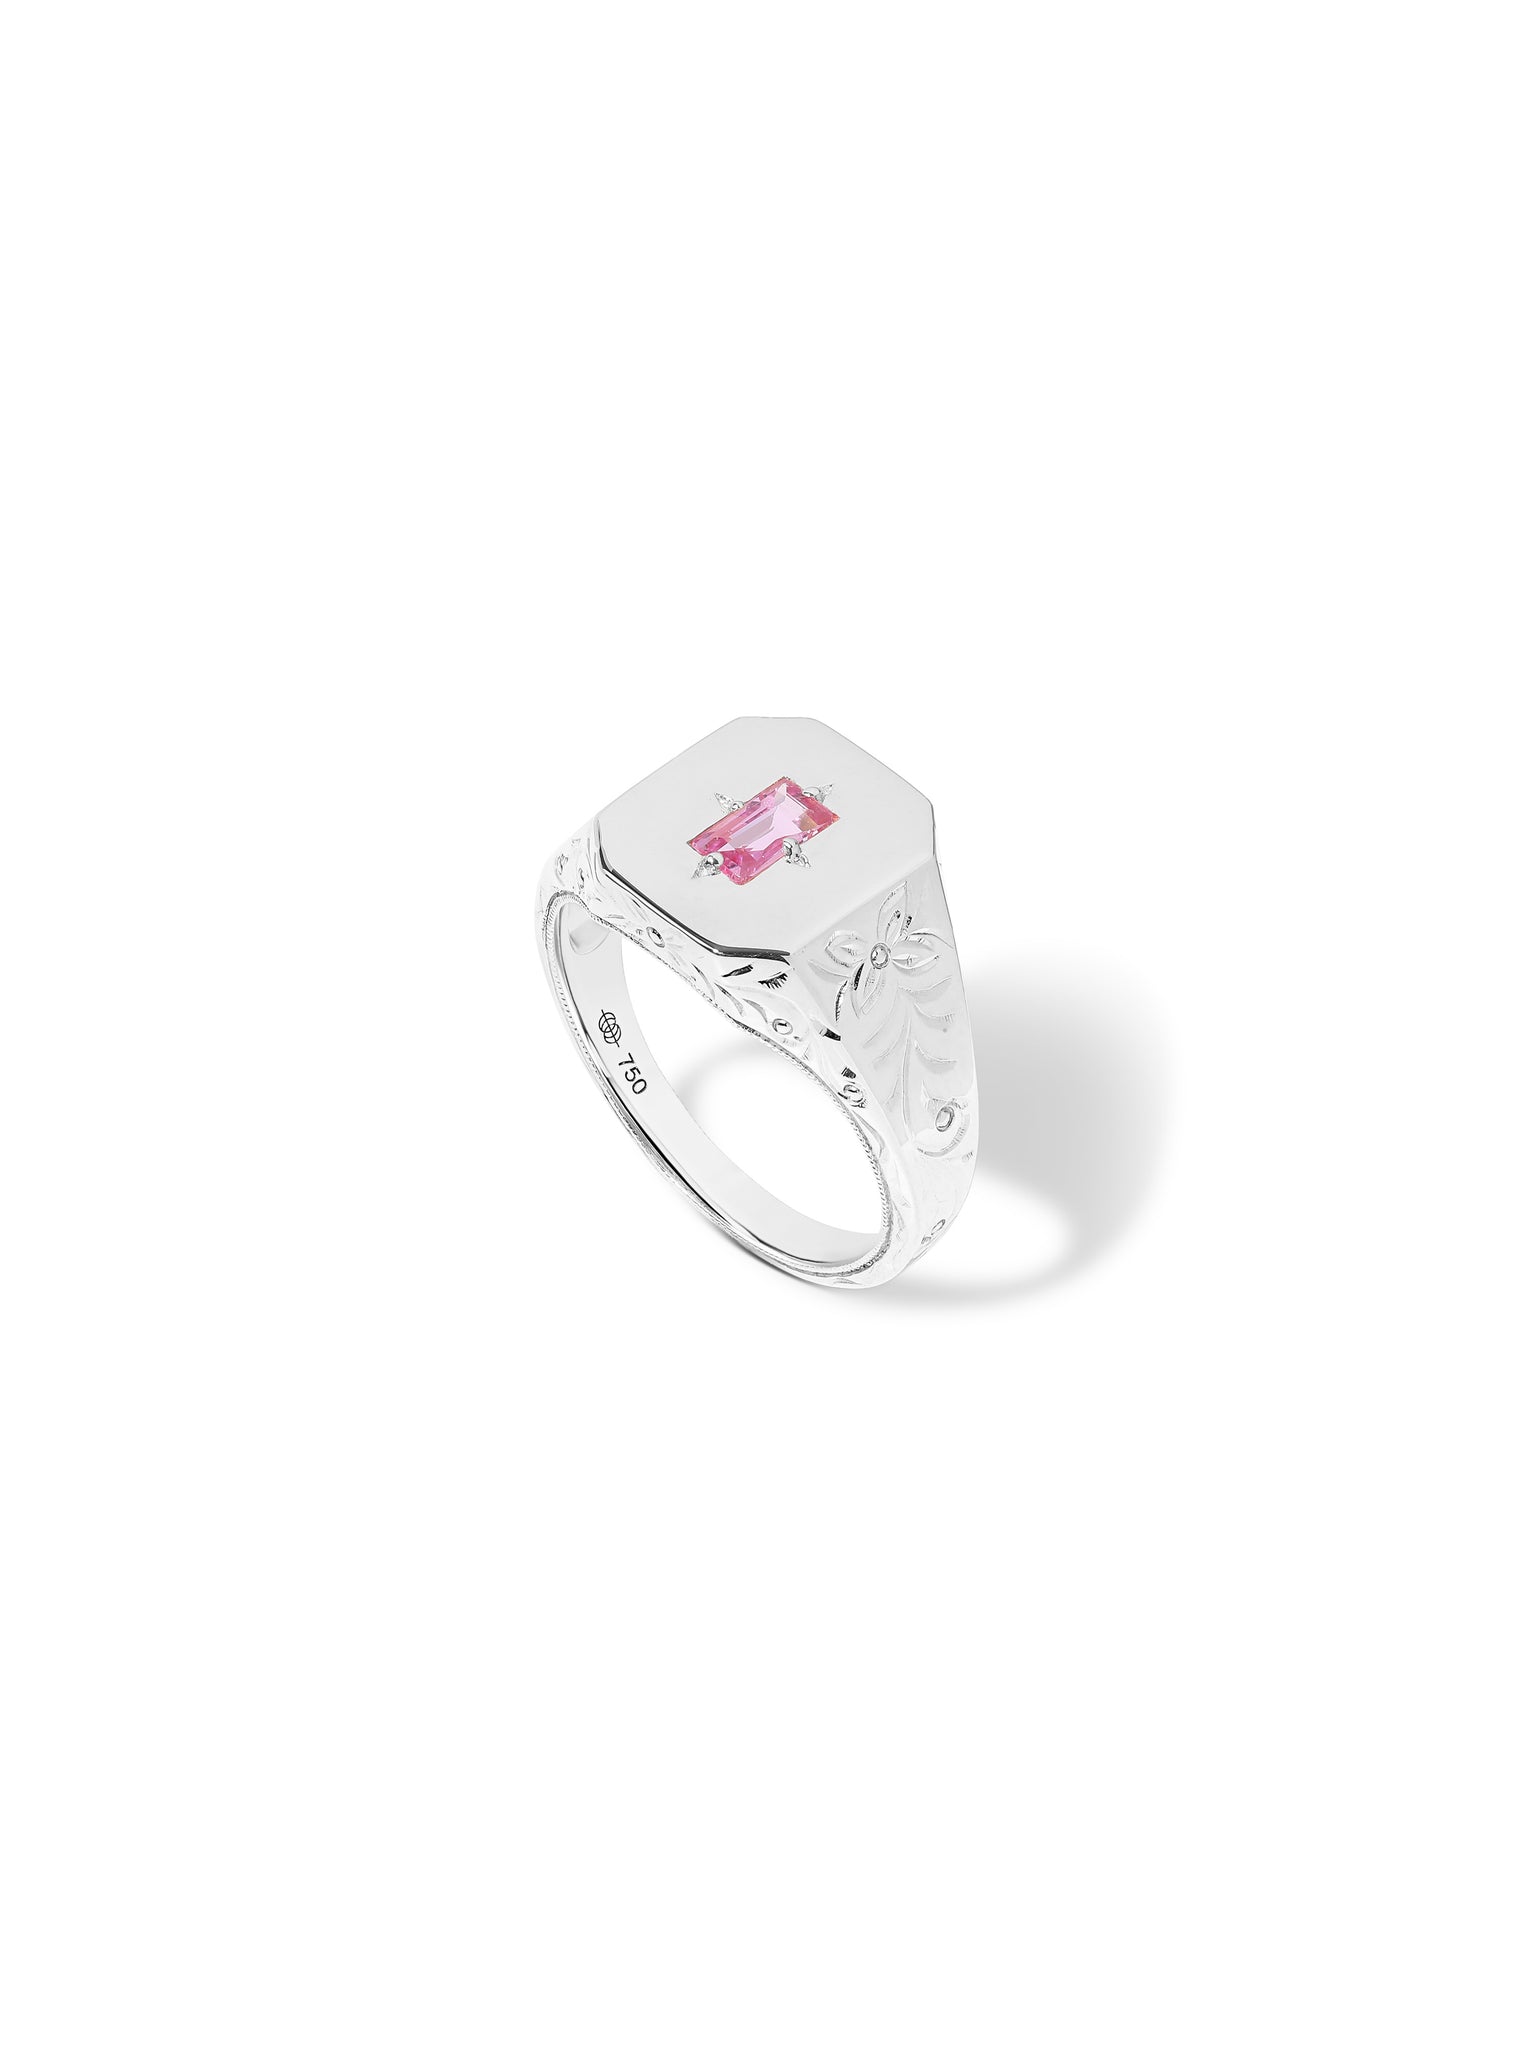 Spade Warisan Pink Sapphire Signet Ring